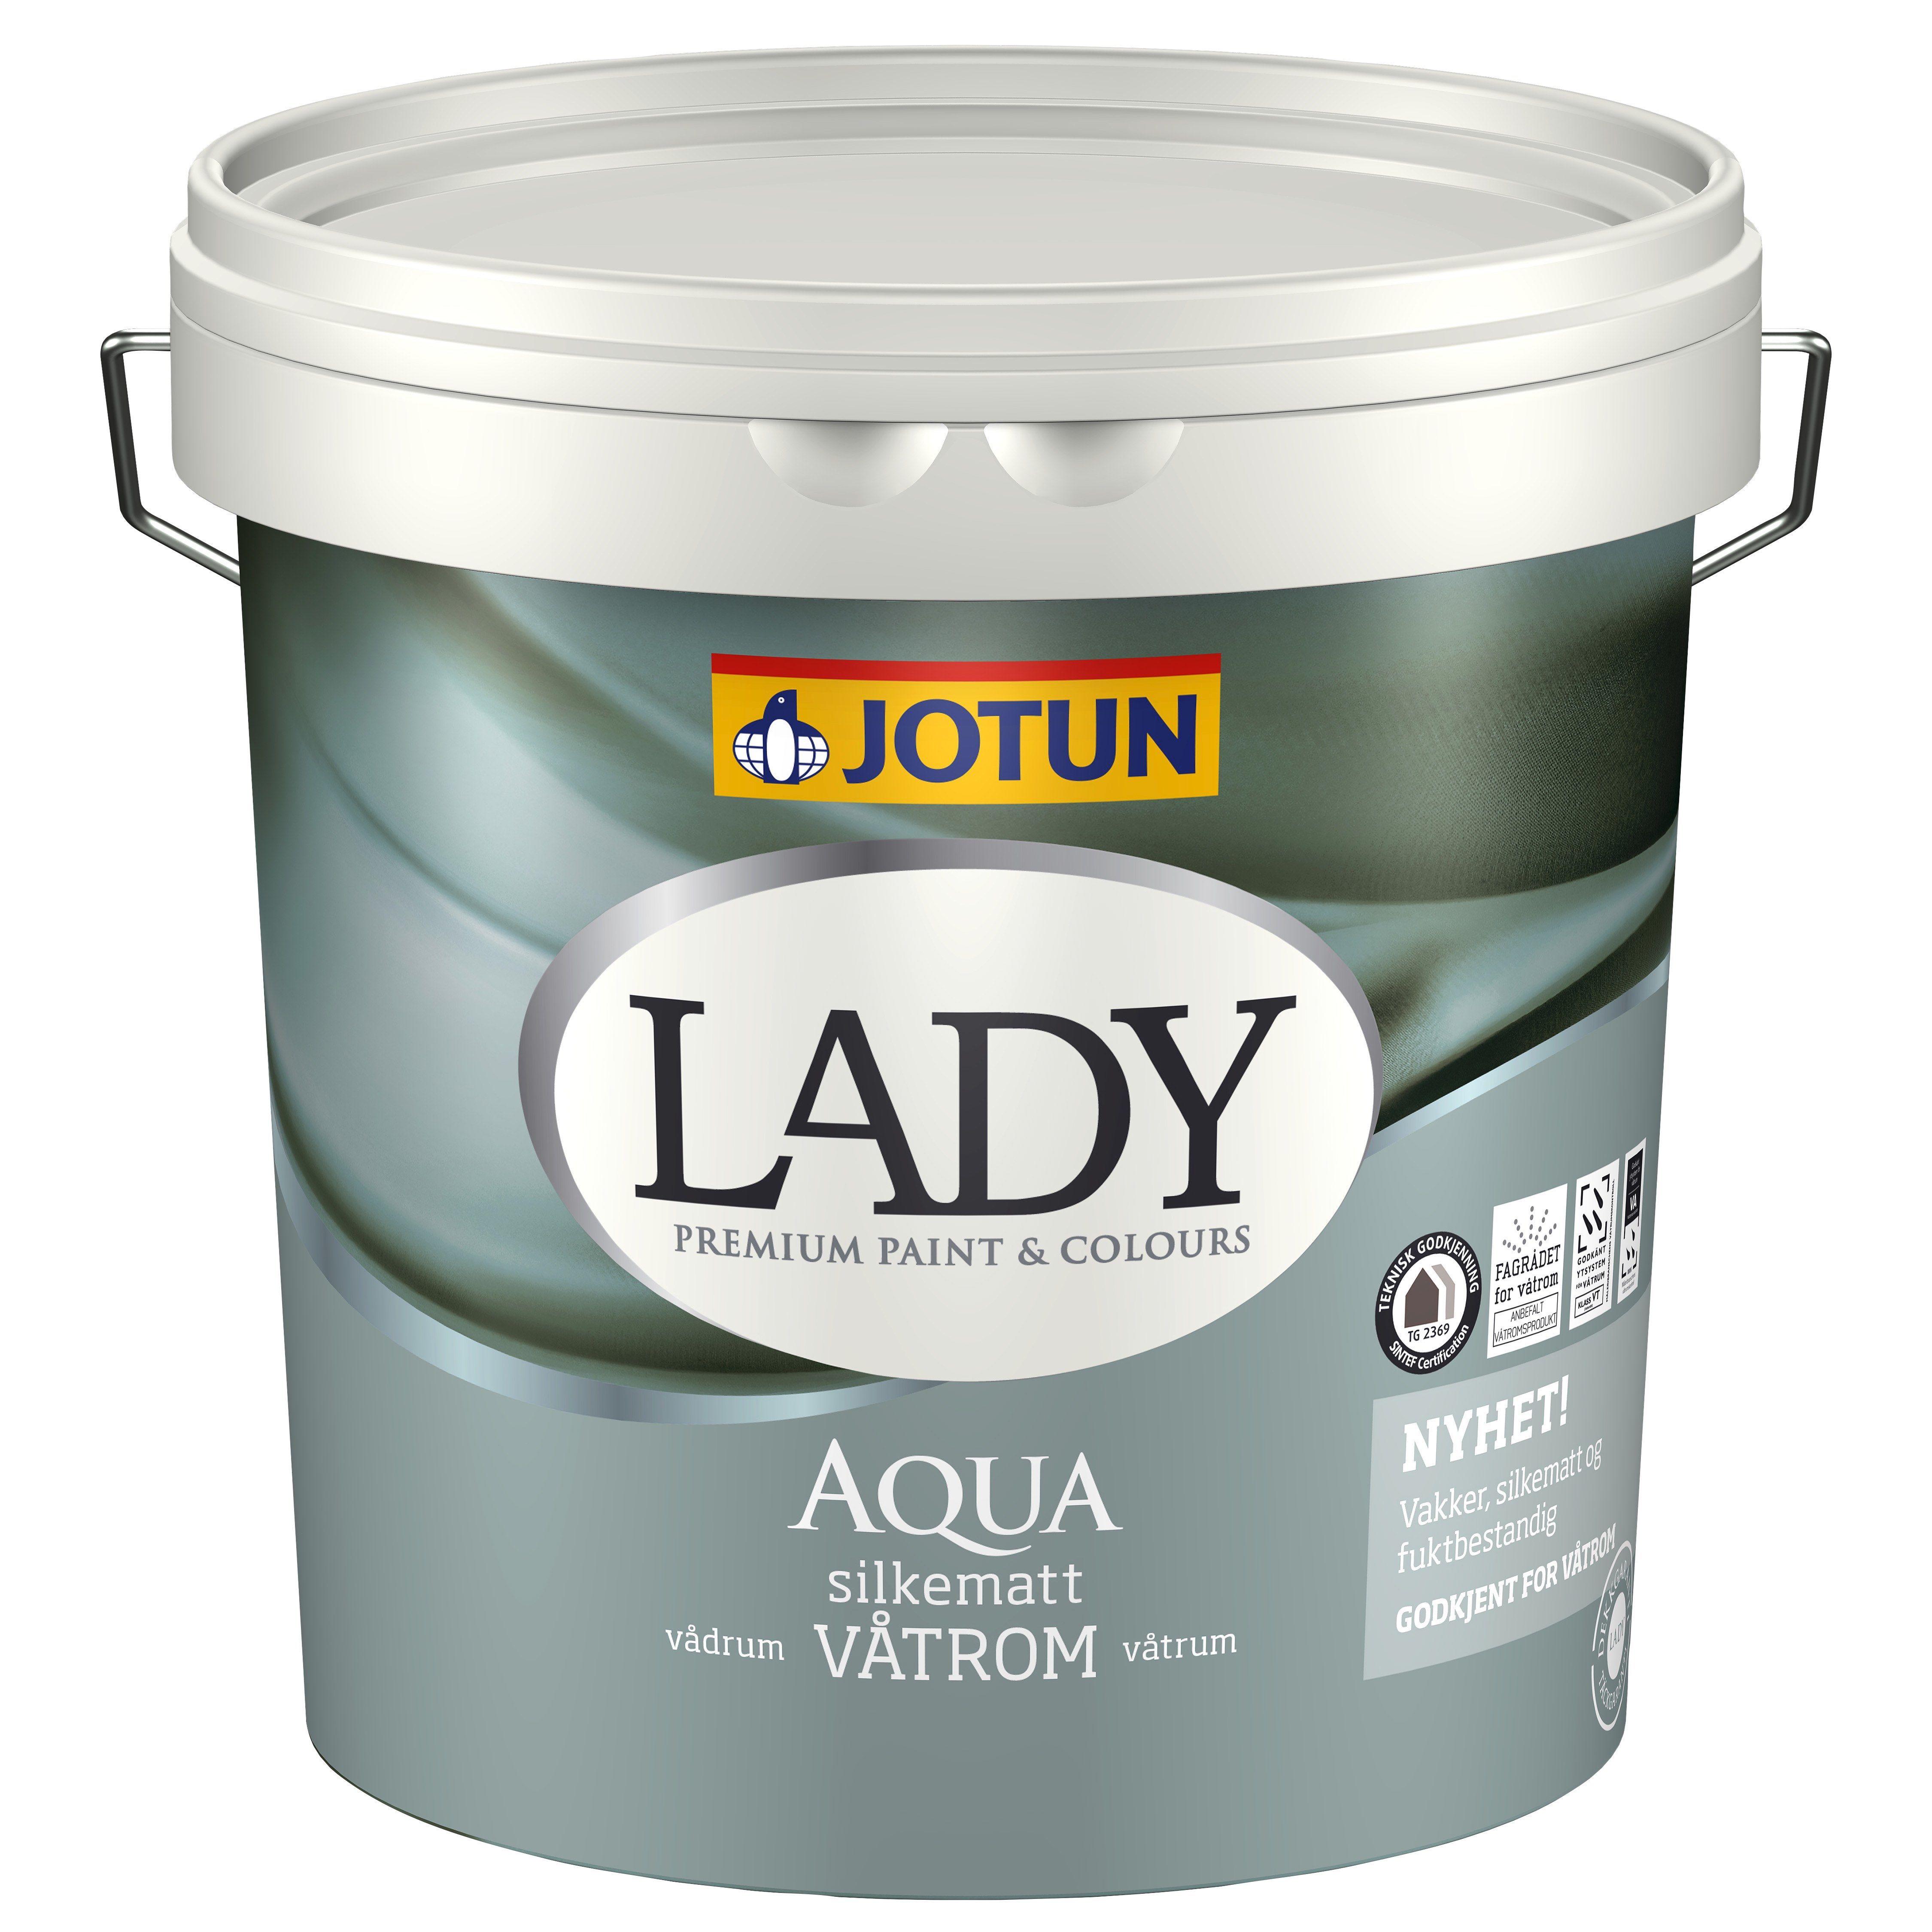 LADY Aqua